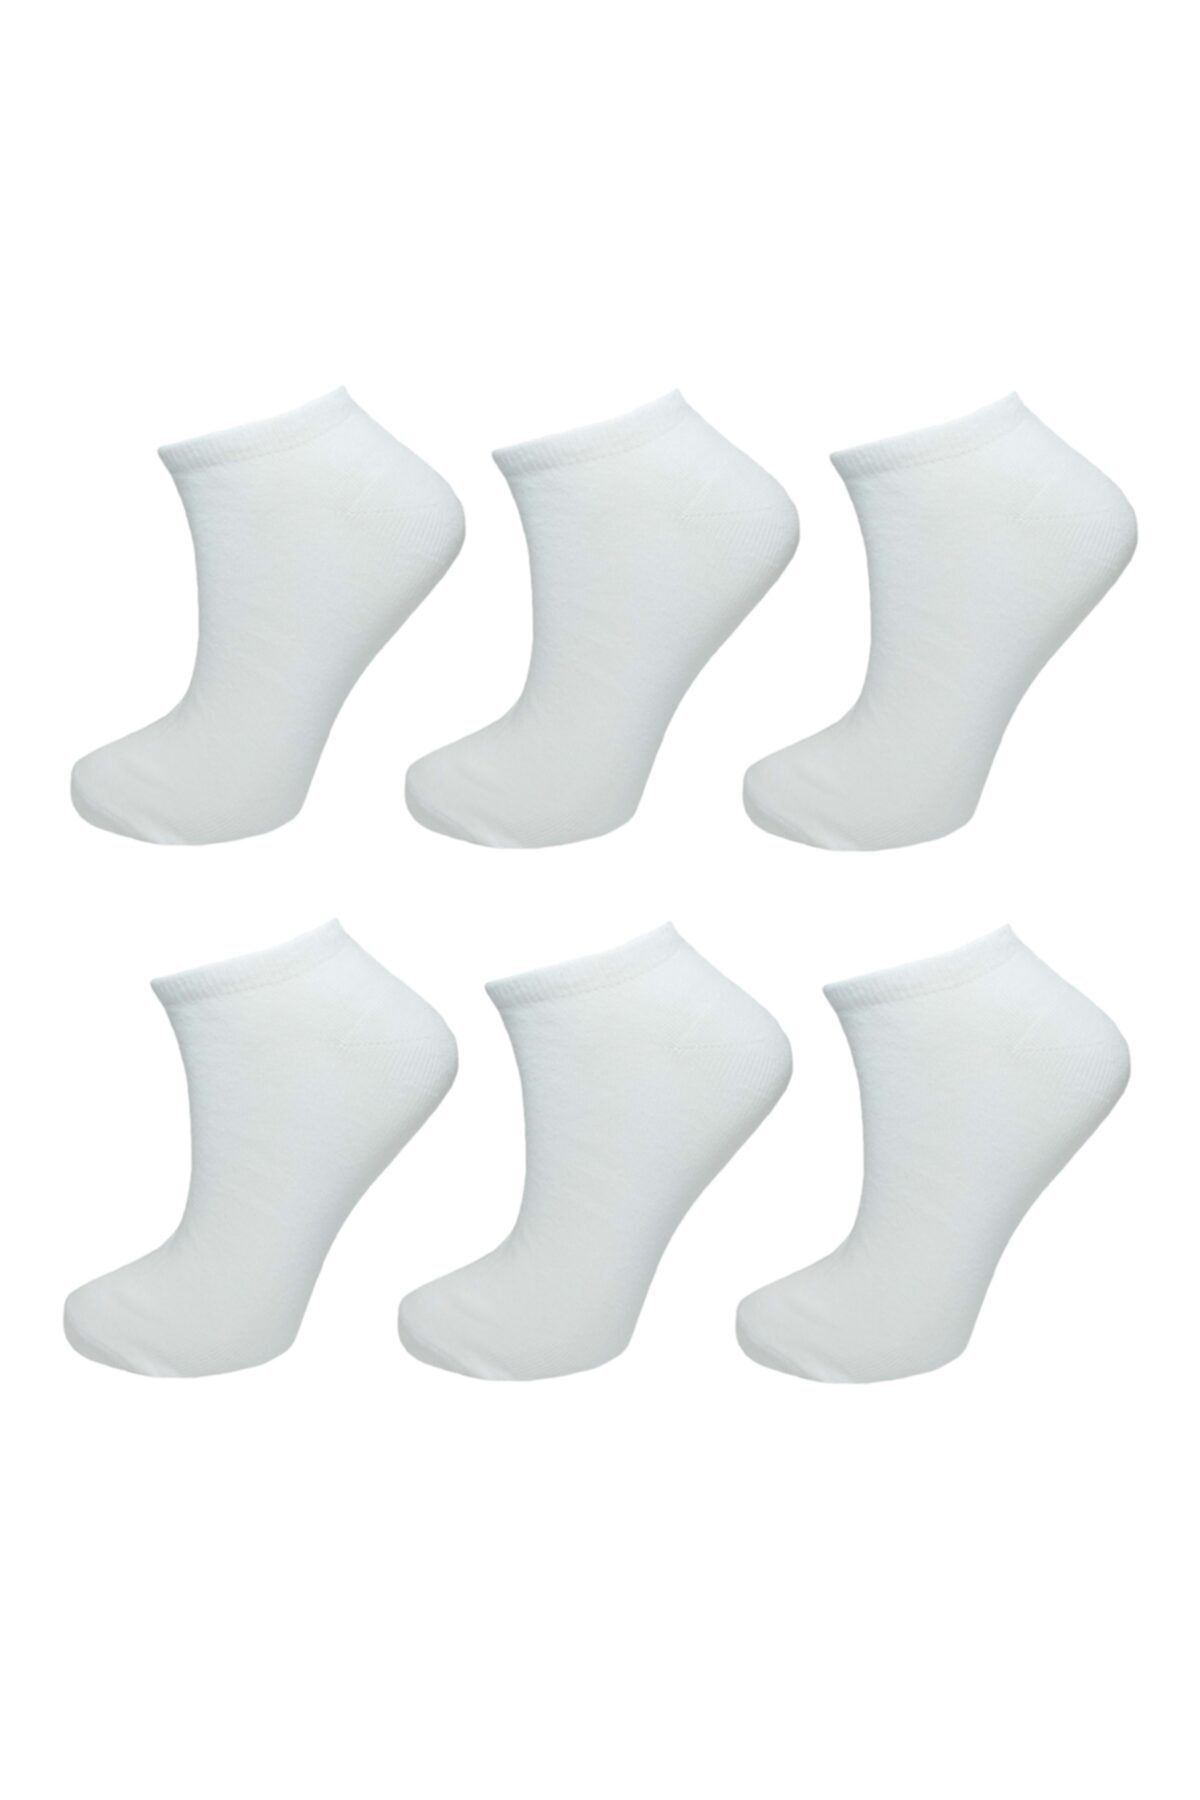 lara big socks 6'lı Düz Beyaz Kadın Patik Çorap (36-40)